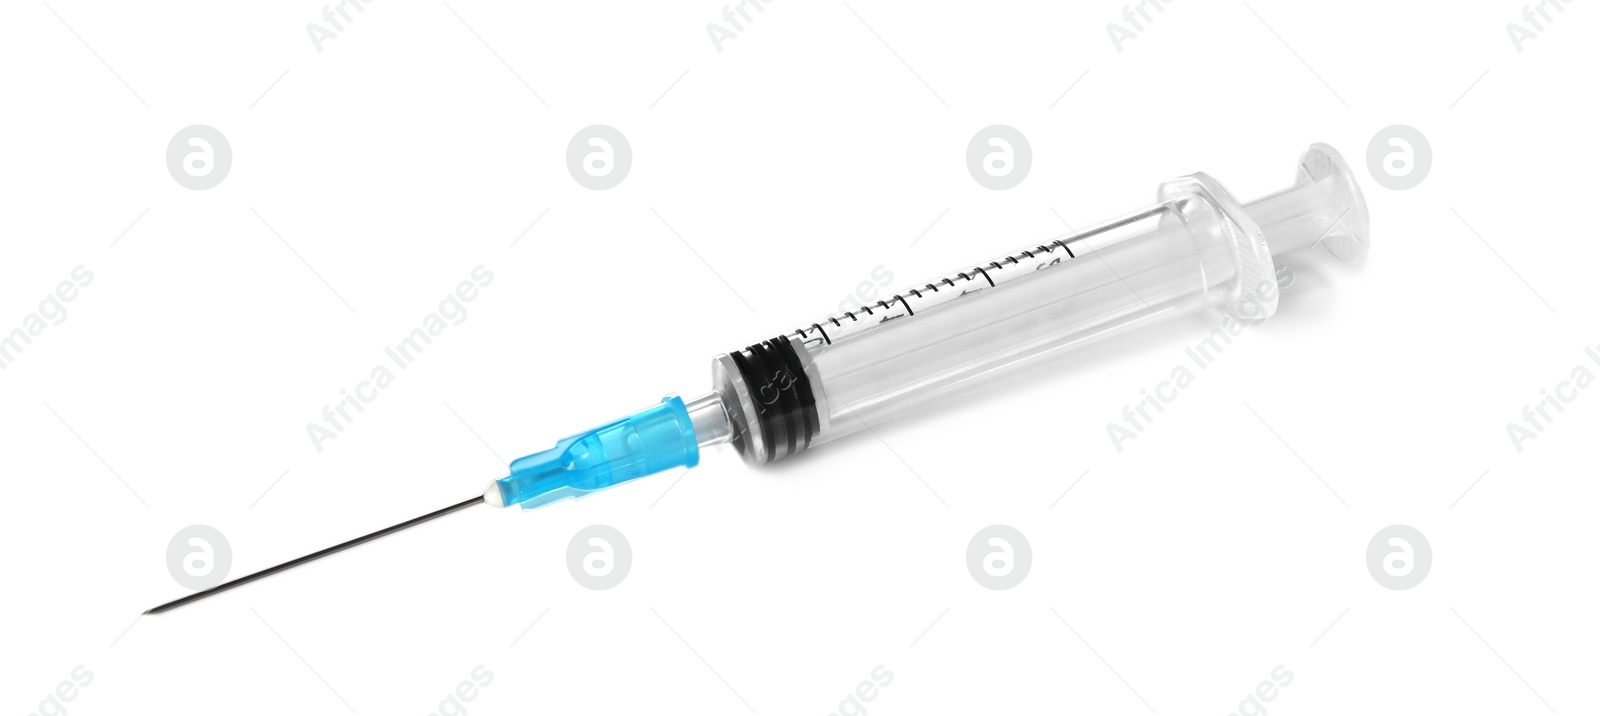 Photo of Plastic syringe on white background. Medical instrument